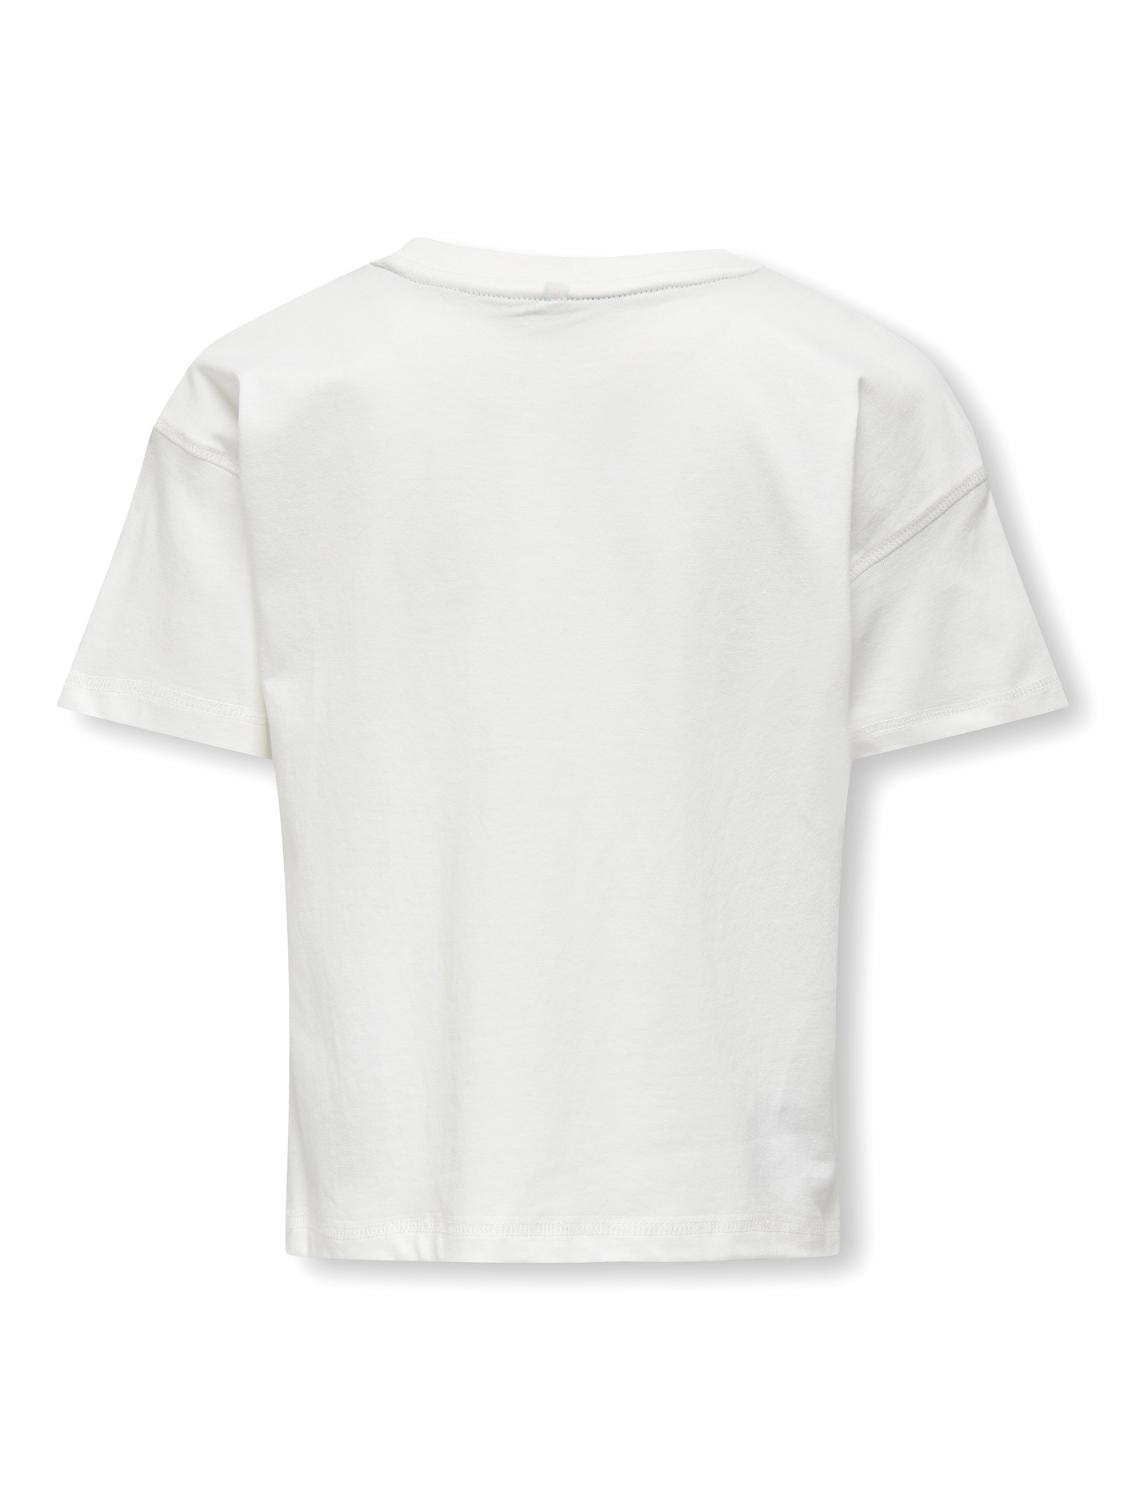 ONLY O-neck t-shirt -Cloud Dancer - 15322471